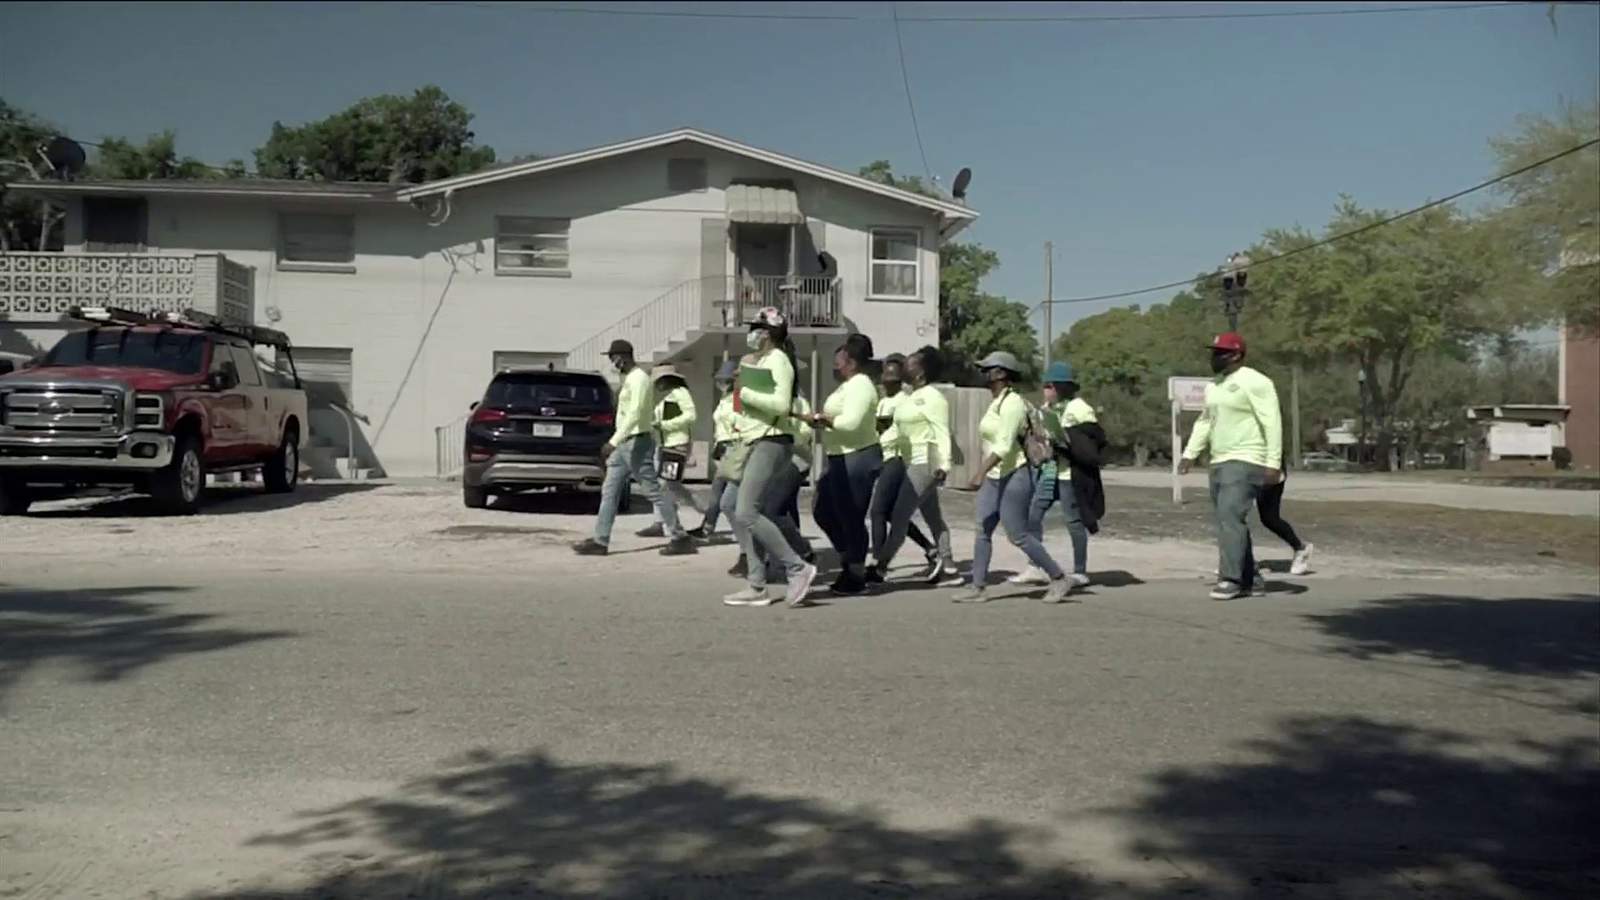 Workers go door to door in Jacksonville to sign up people for COVID-19 shots